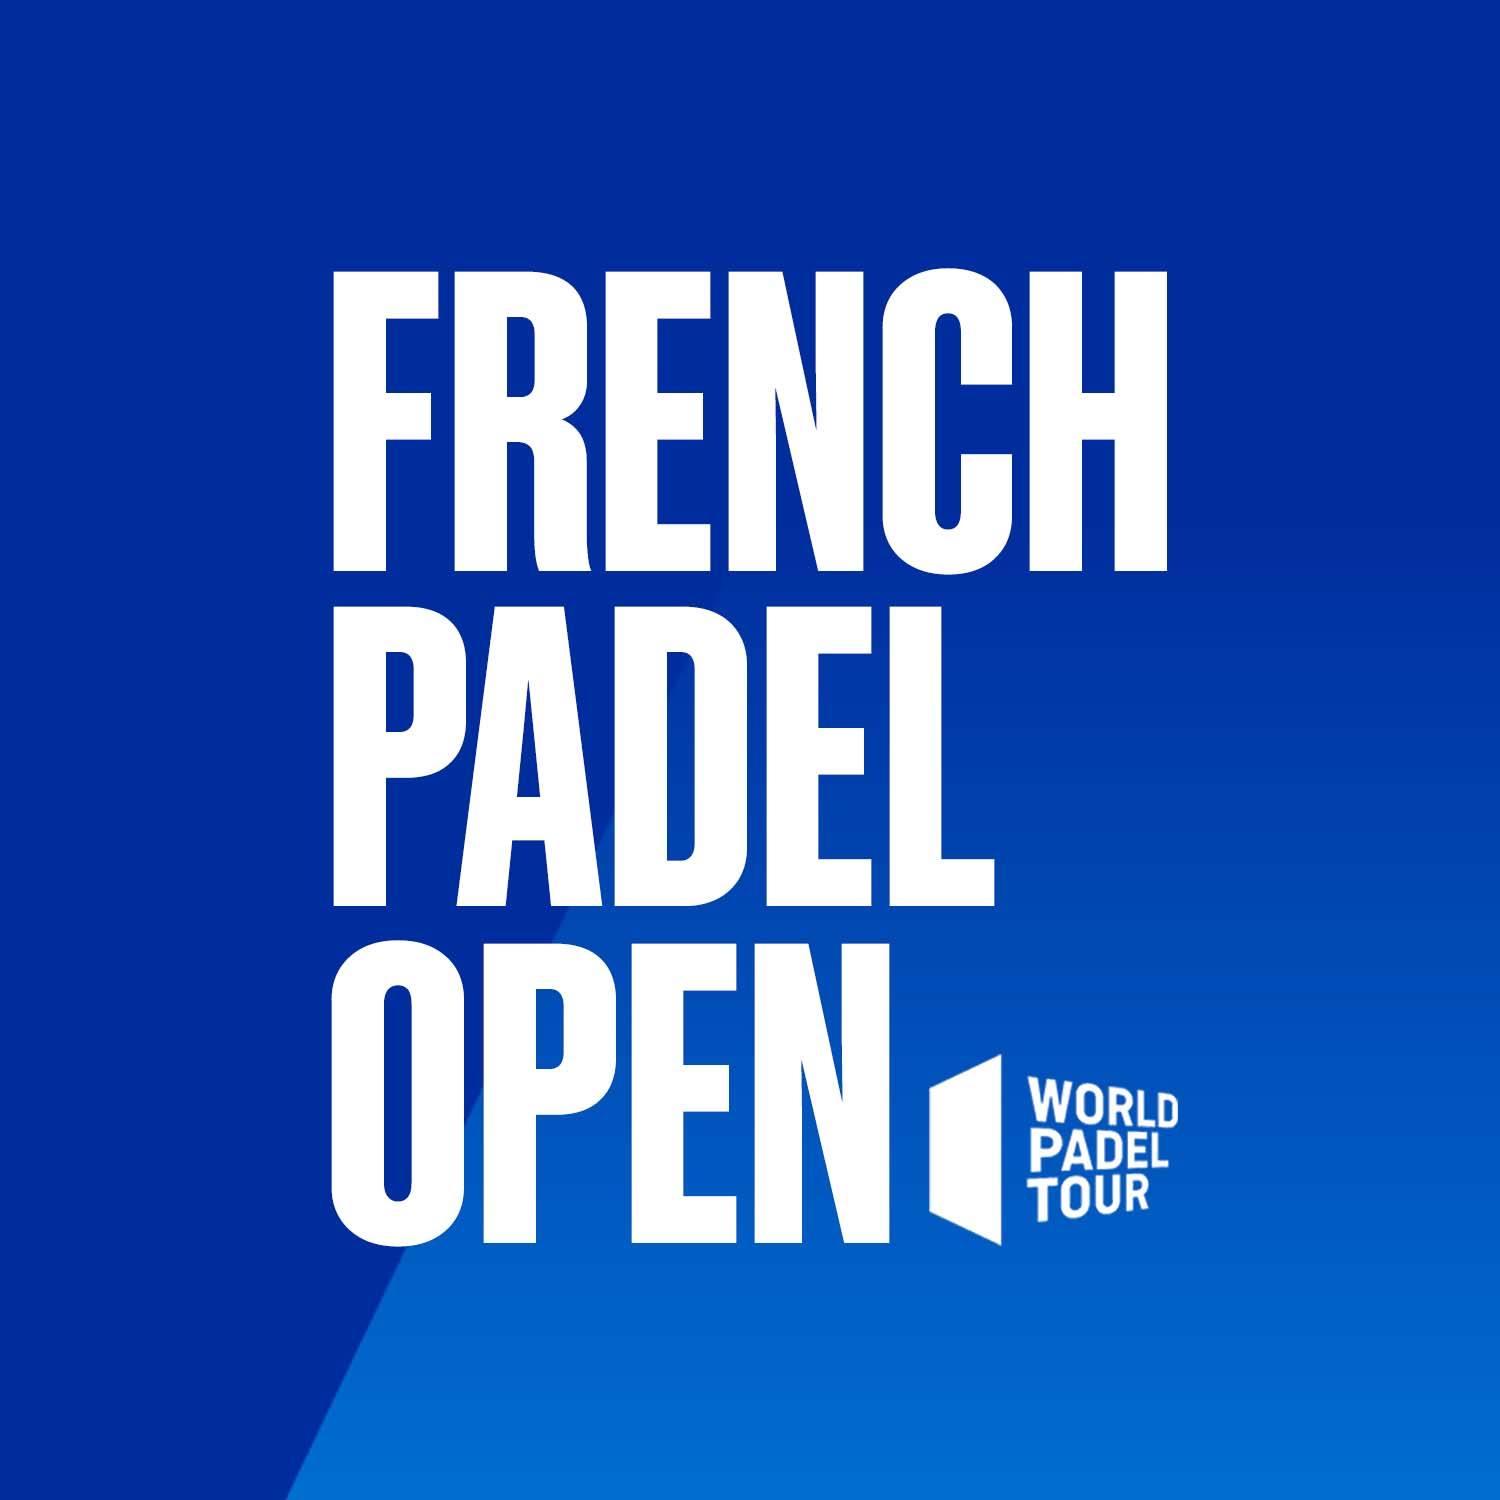 World Padel Tour French Open: kasa biletowa wkrótce zostanie otwarta